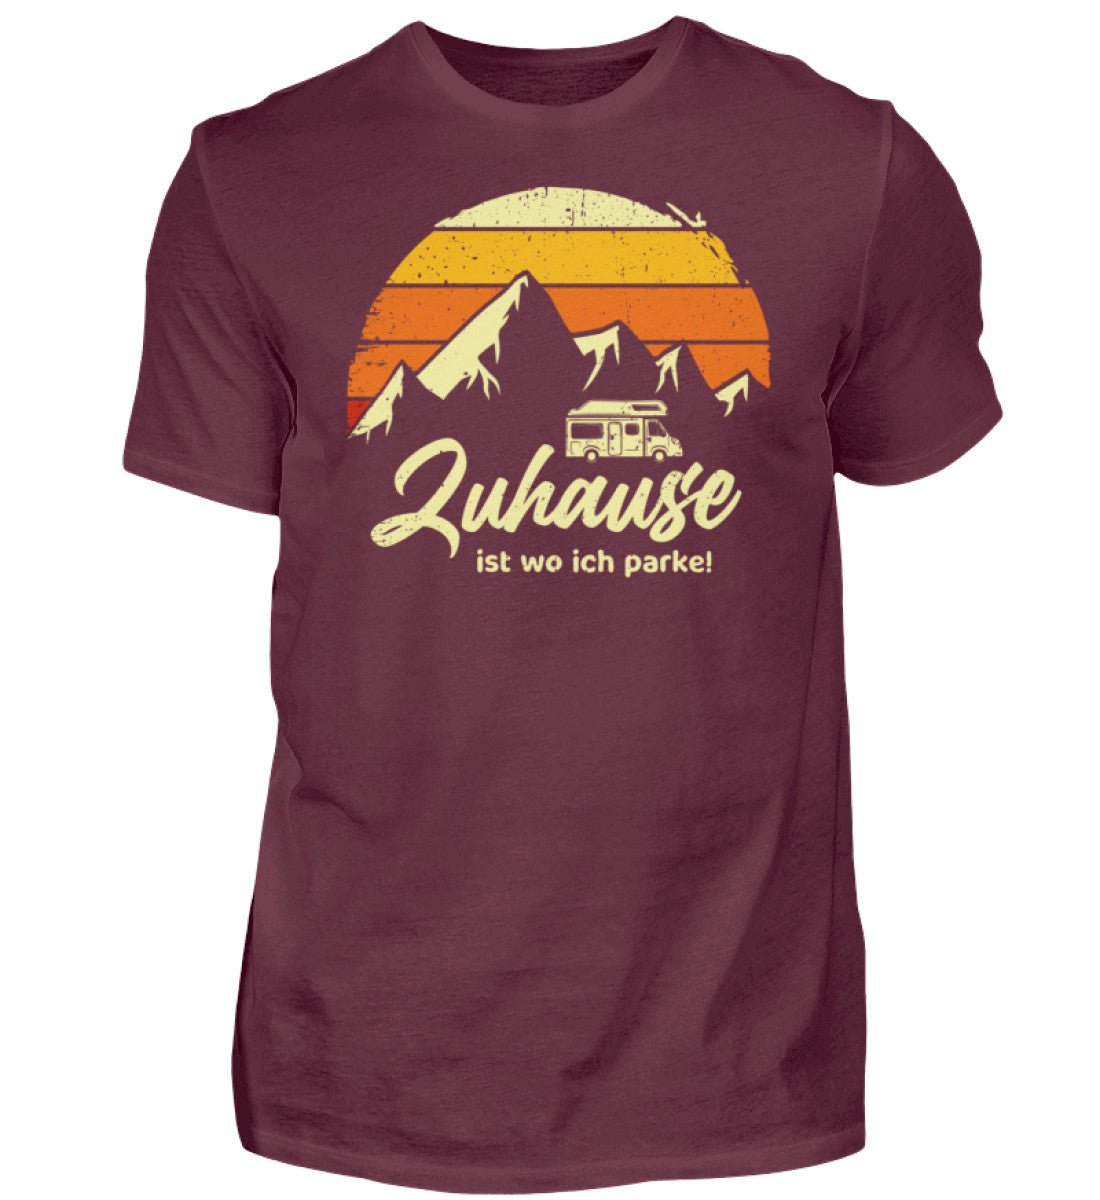 ZUHAUSE - Herren Shirt in der Farbe Burgundy